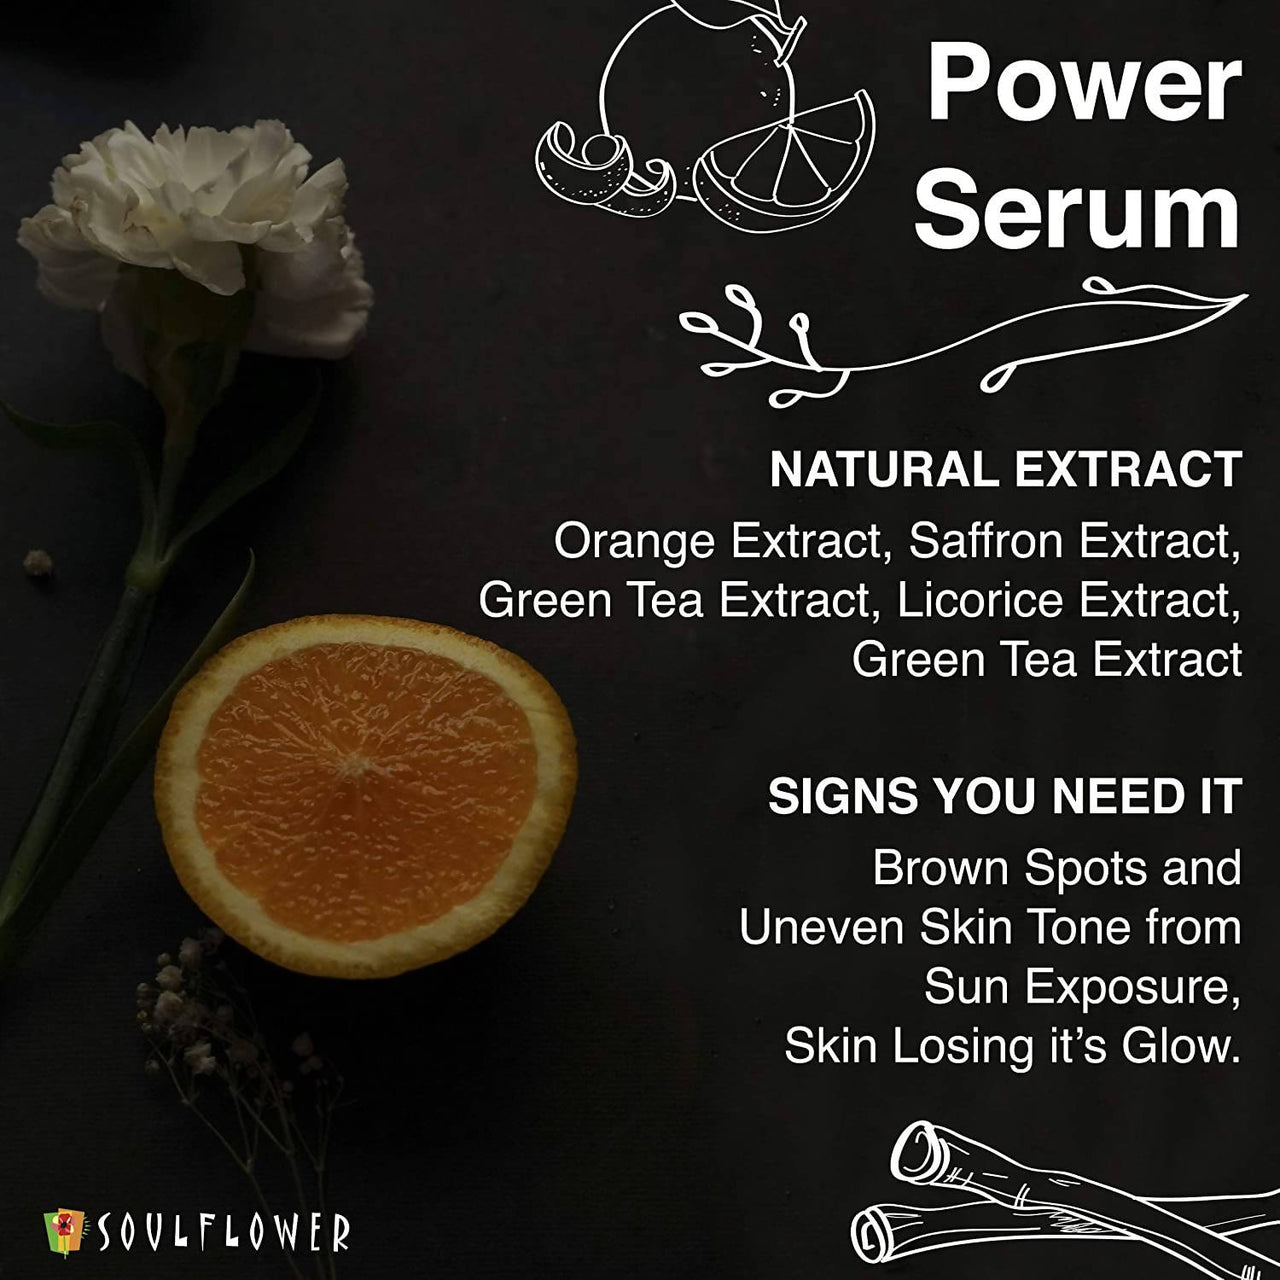 Soulflower Herbal Vitamin C Power Serum Uses